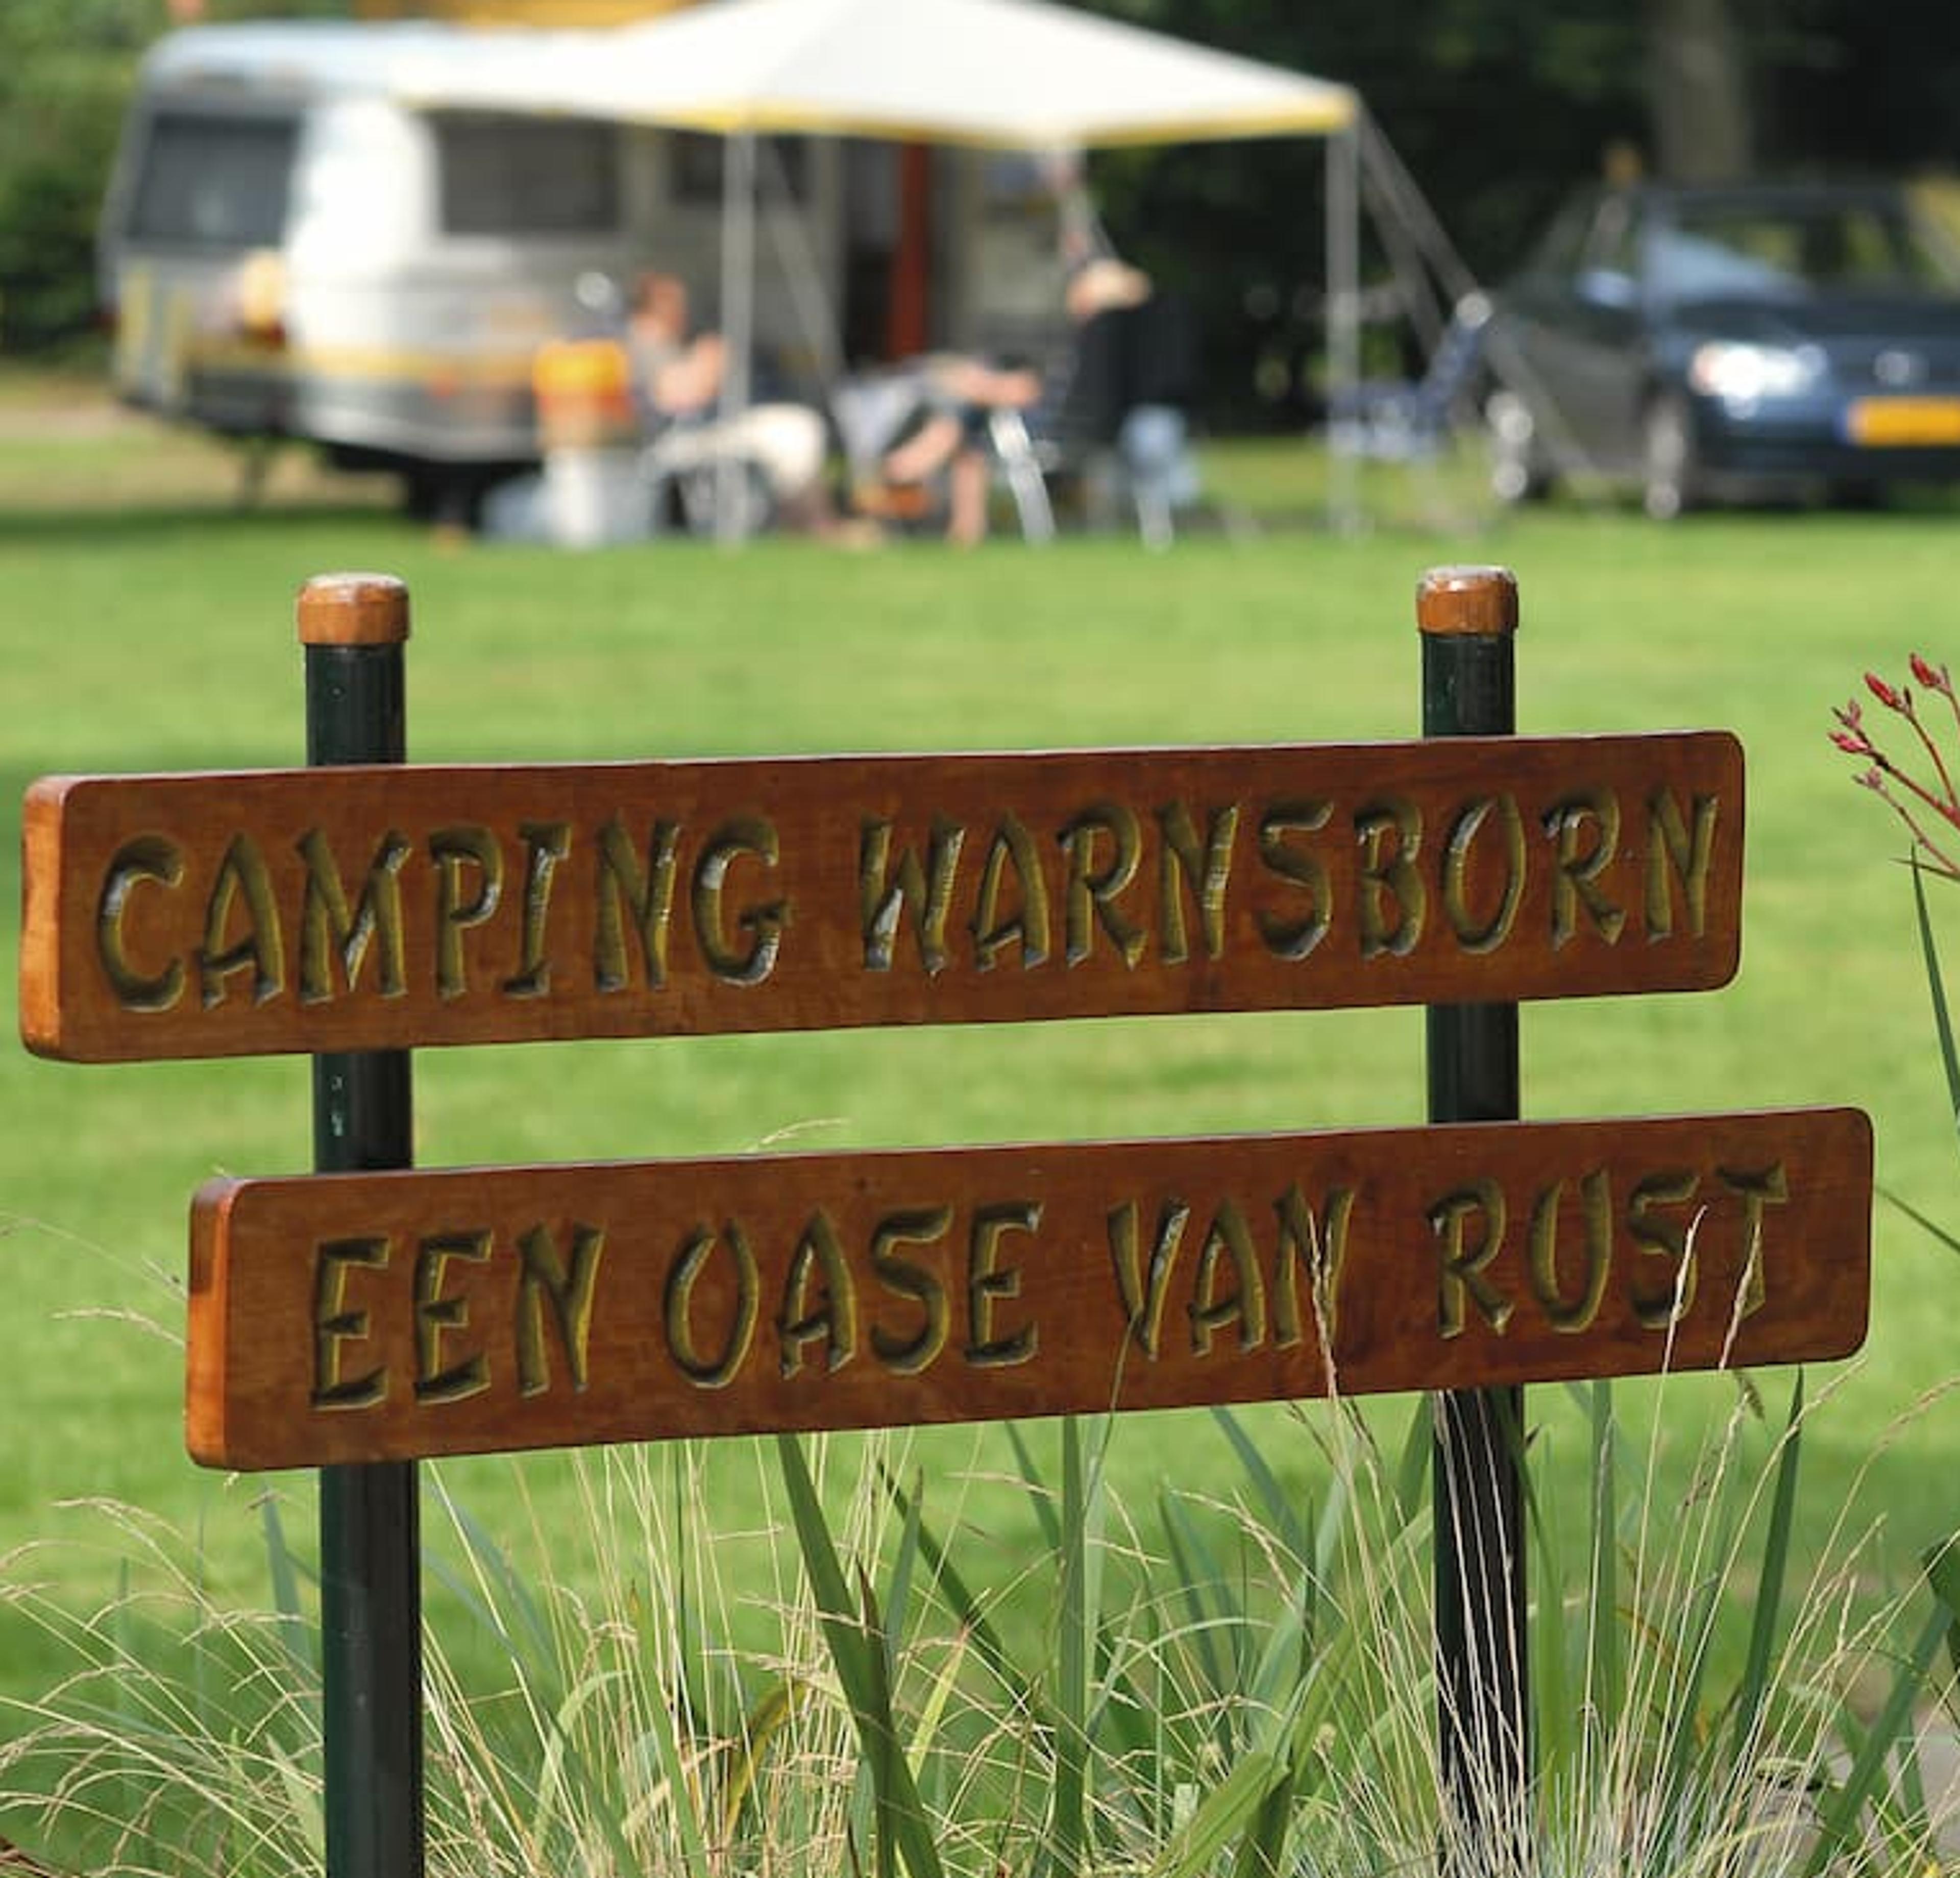 Camping Warnsborn, een oase van rust.